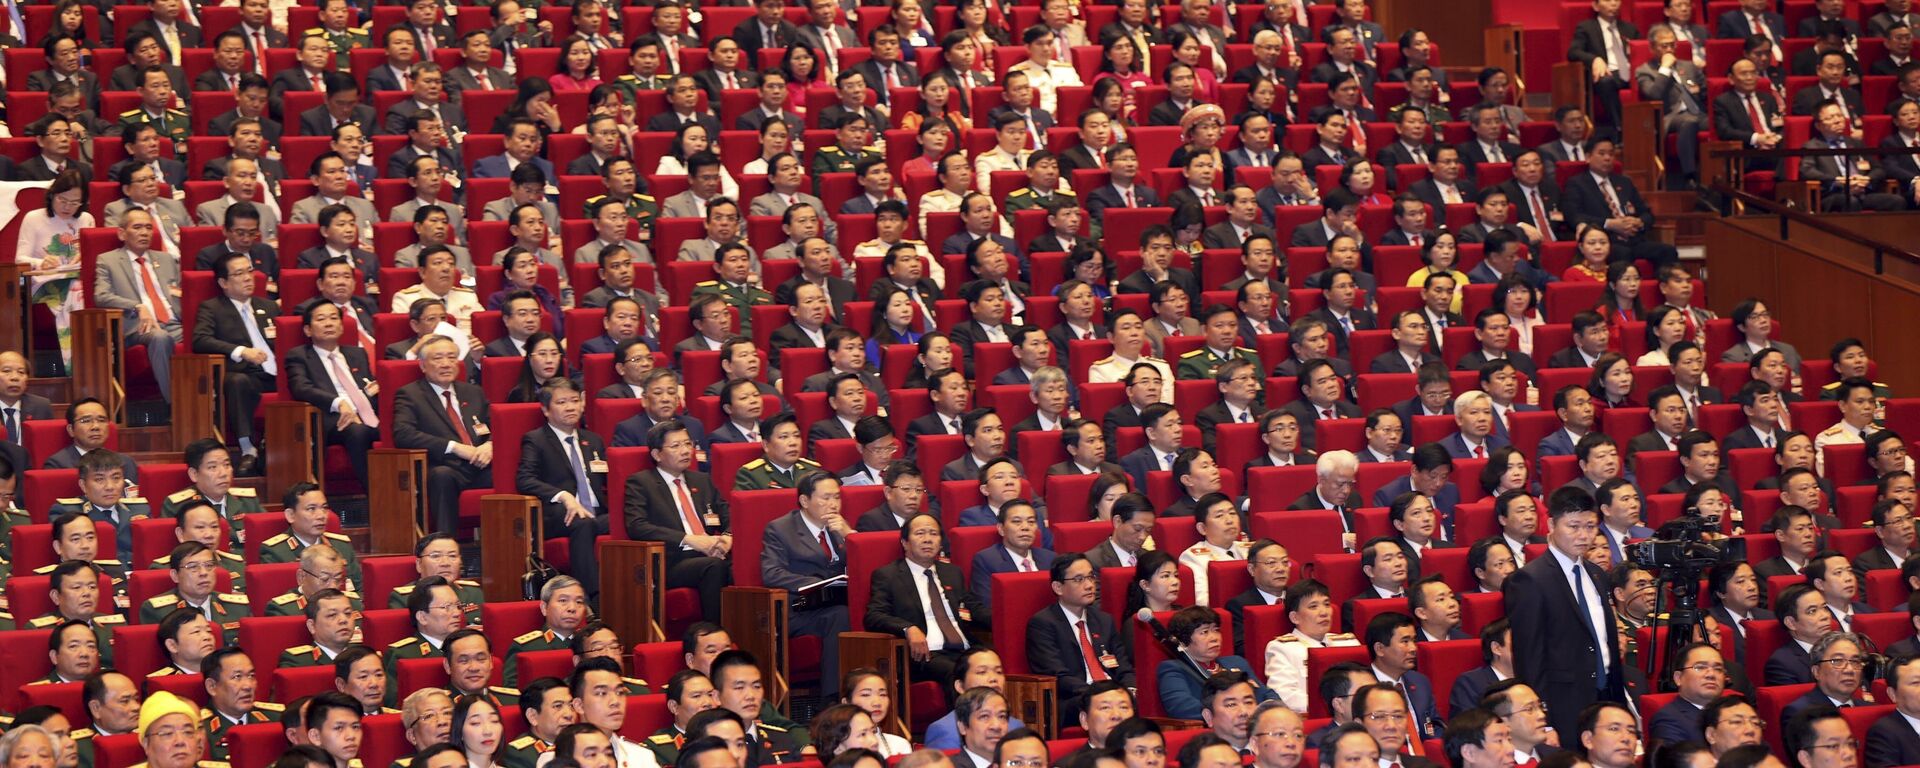 Các đại biểu trong lễ khai mạc Đại hội lần thứ XIII của Đảng Cộng sản Việt Nam tại Hà Nội - Sputnik Việt Nam, 1920, 25.05.2021